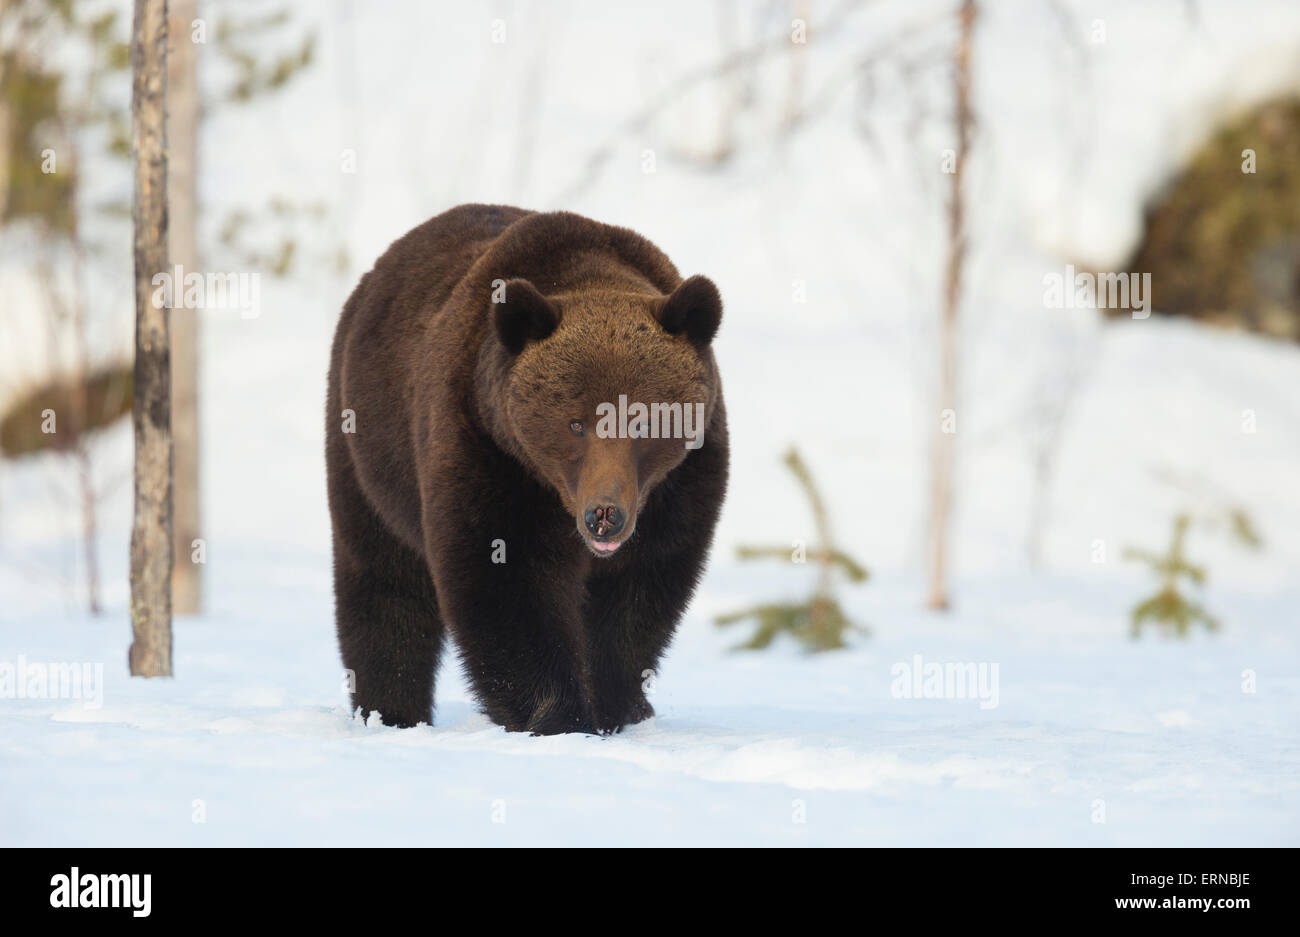 Euroasiática de oso pardo (Ursus arctos arctos), durante el invierno, Finlandia. Foto de stock